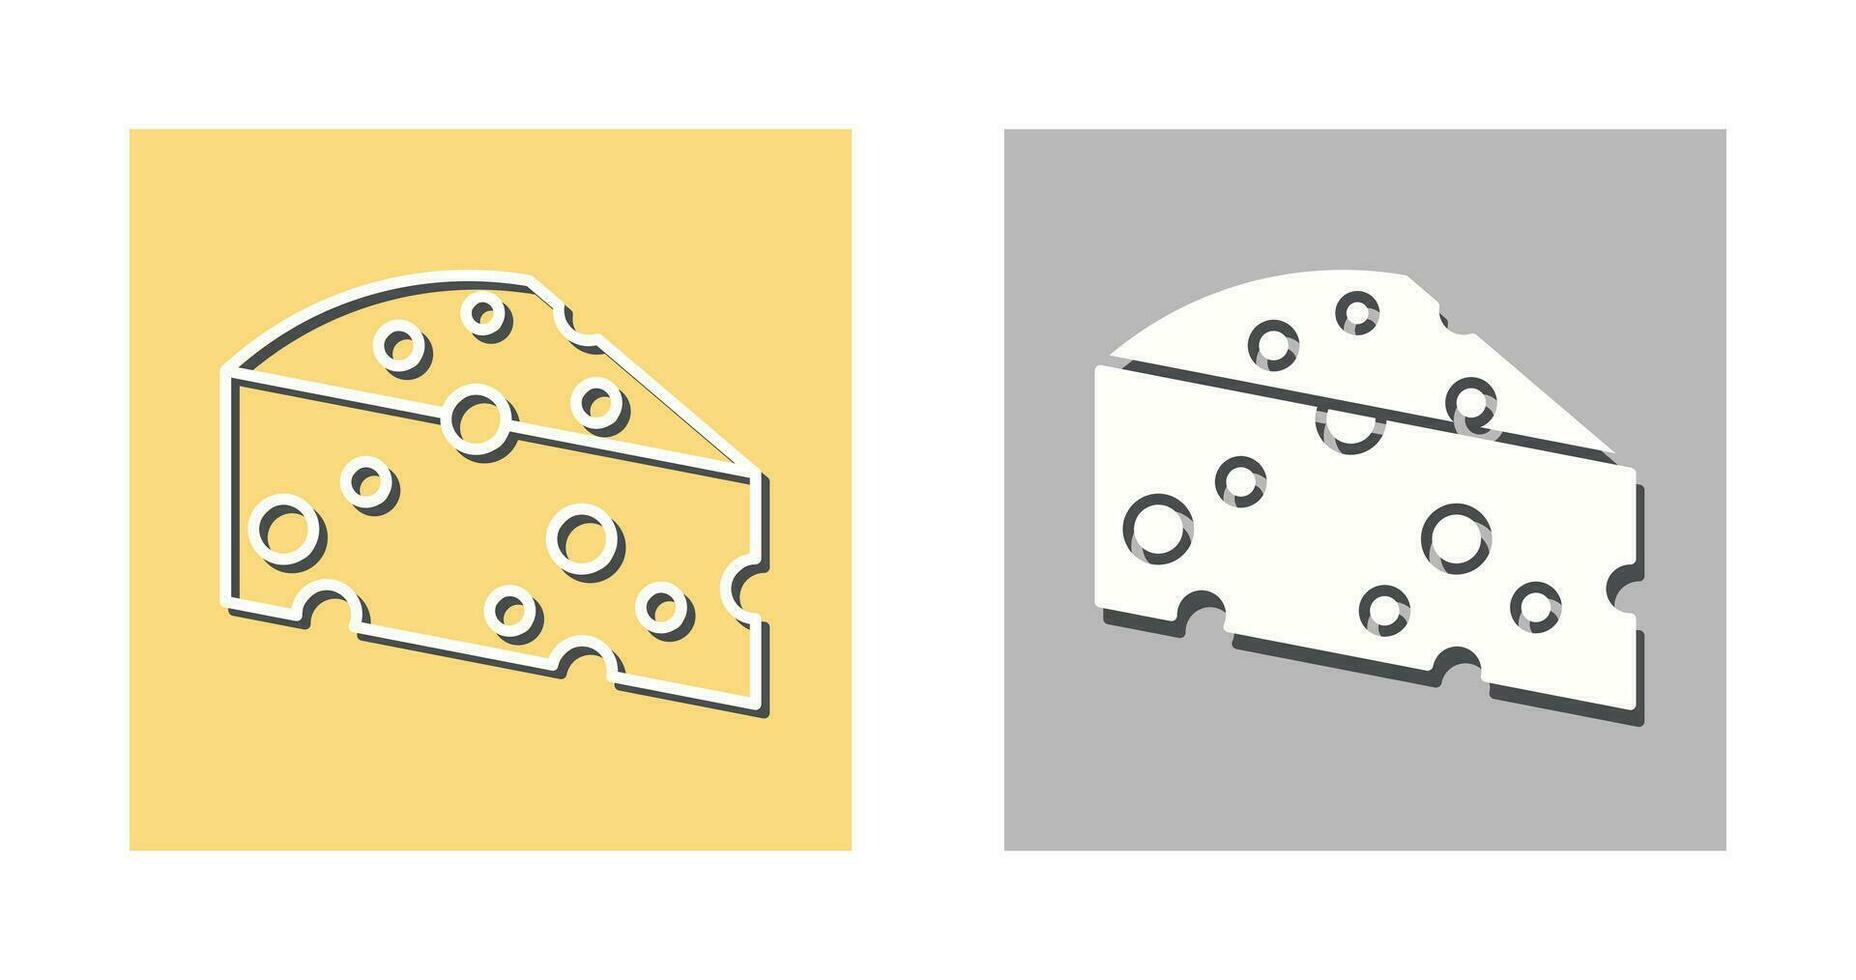 Cheese Vector Icon